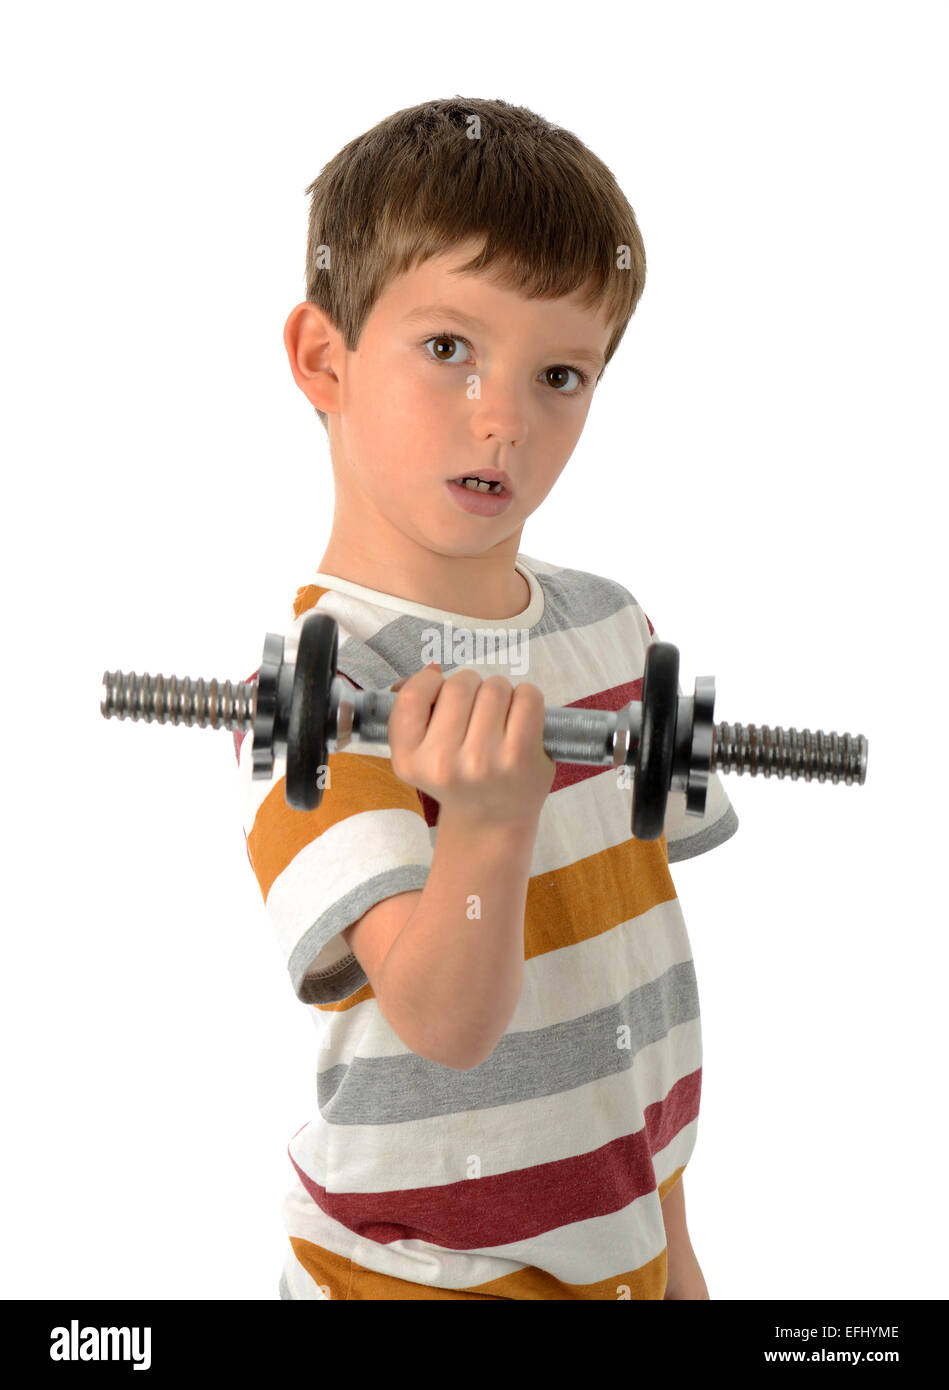 Junge heben eine Hantel, kleines Kind Gewichtheben Stockfotografie - Alamy